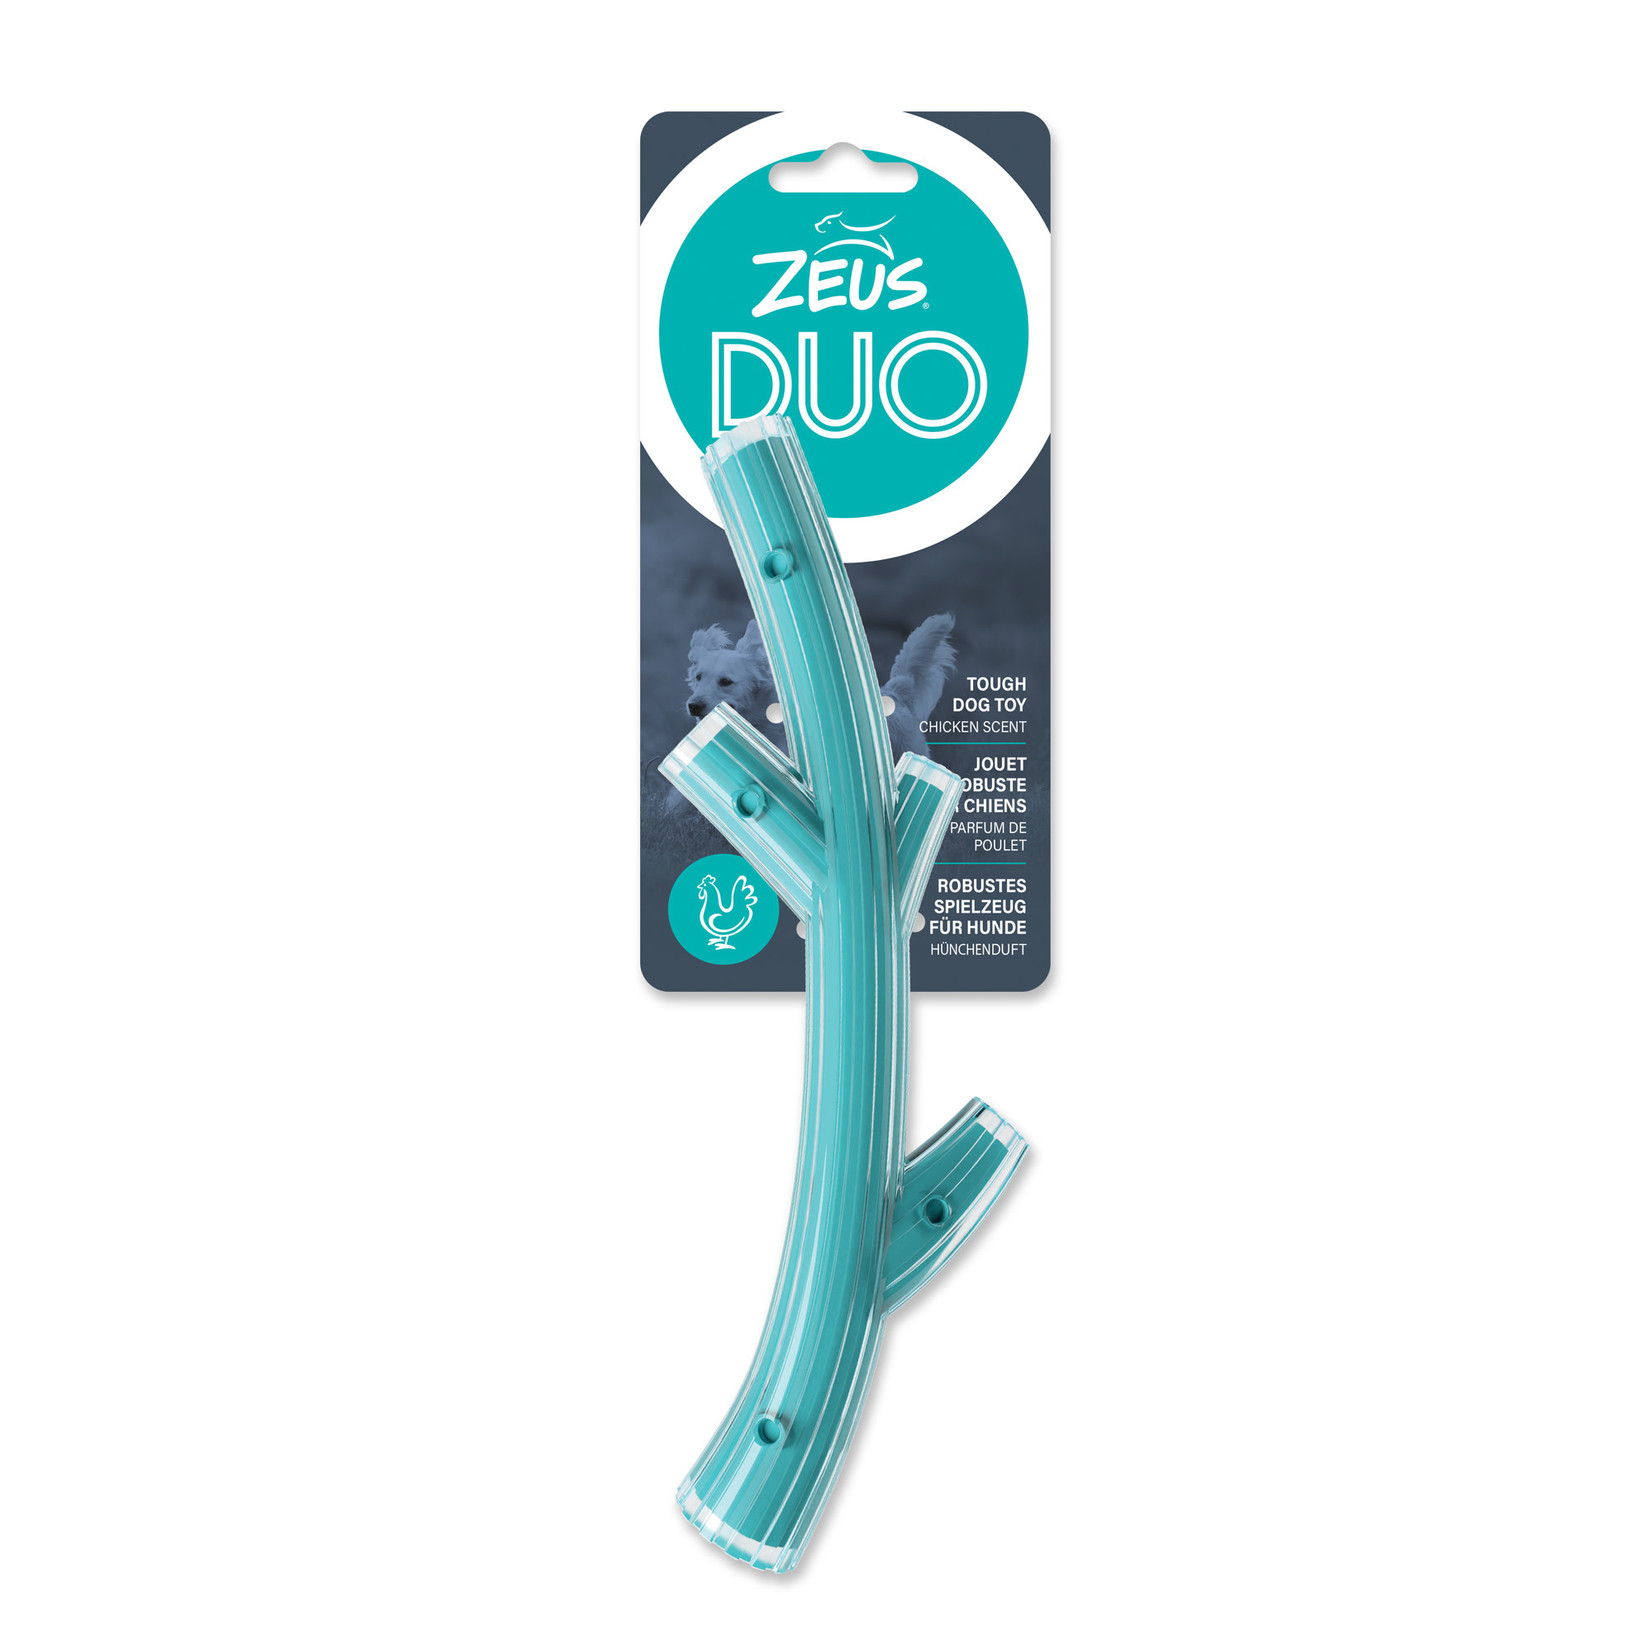 ZEUS Zeus Duo Stick - Chicken Scent - Turquoise - 23 cm (9 in)